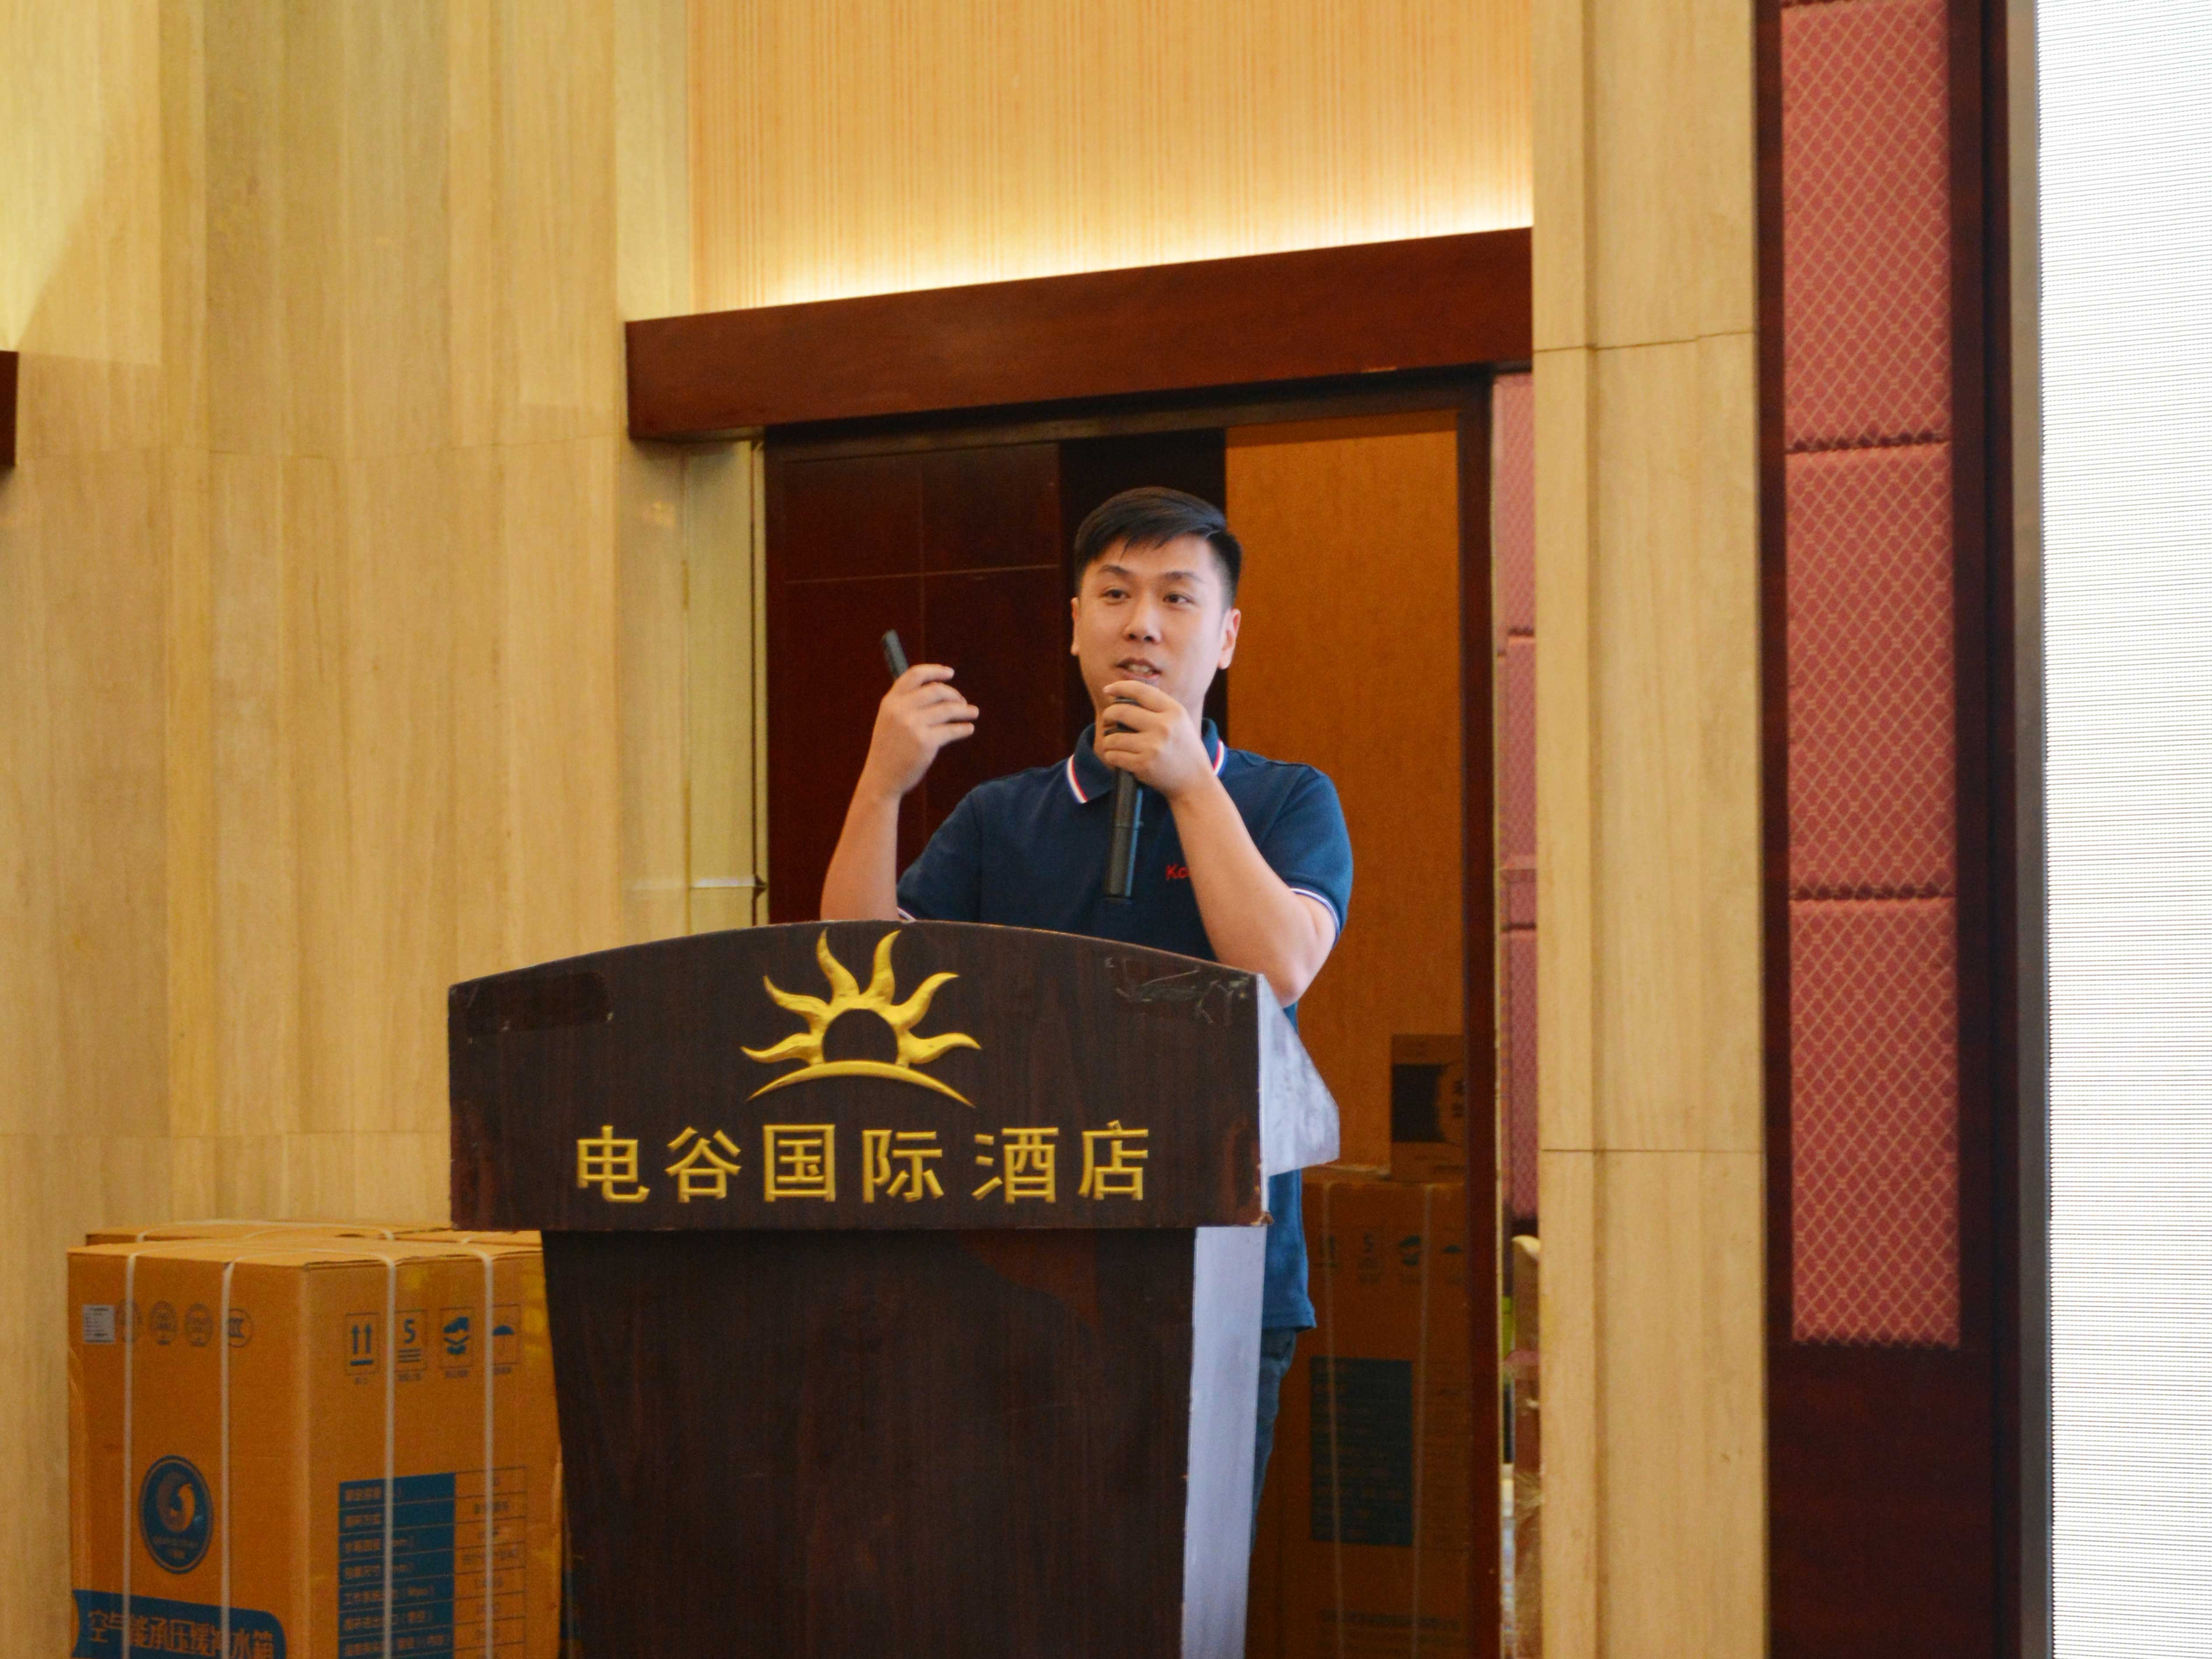 公司副总裁、机电工程与热力运营事业部总经理陈柳在大会上进行了《STS高效热泵及模块化系统技术应用》的演讲